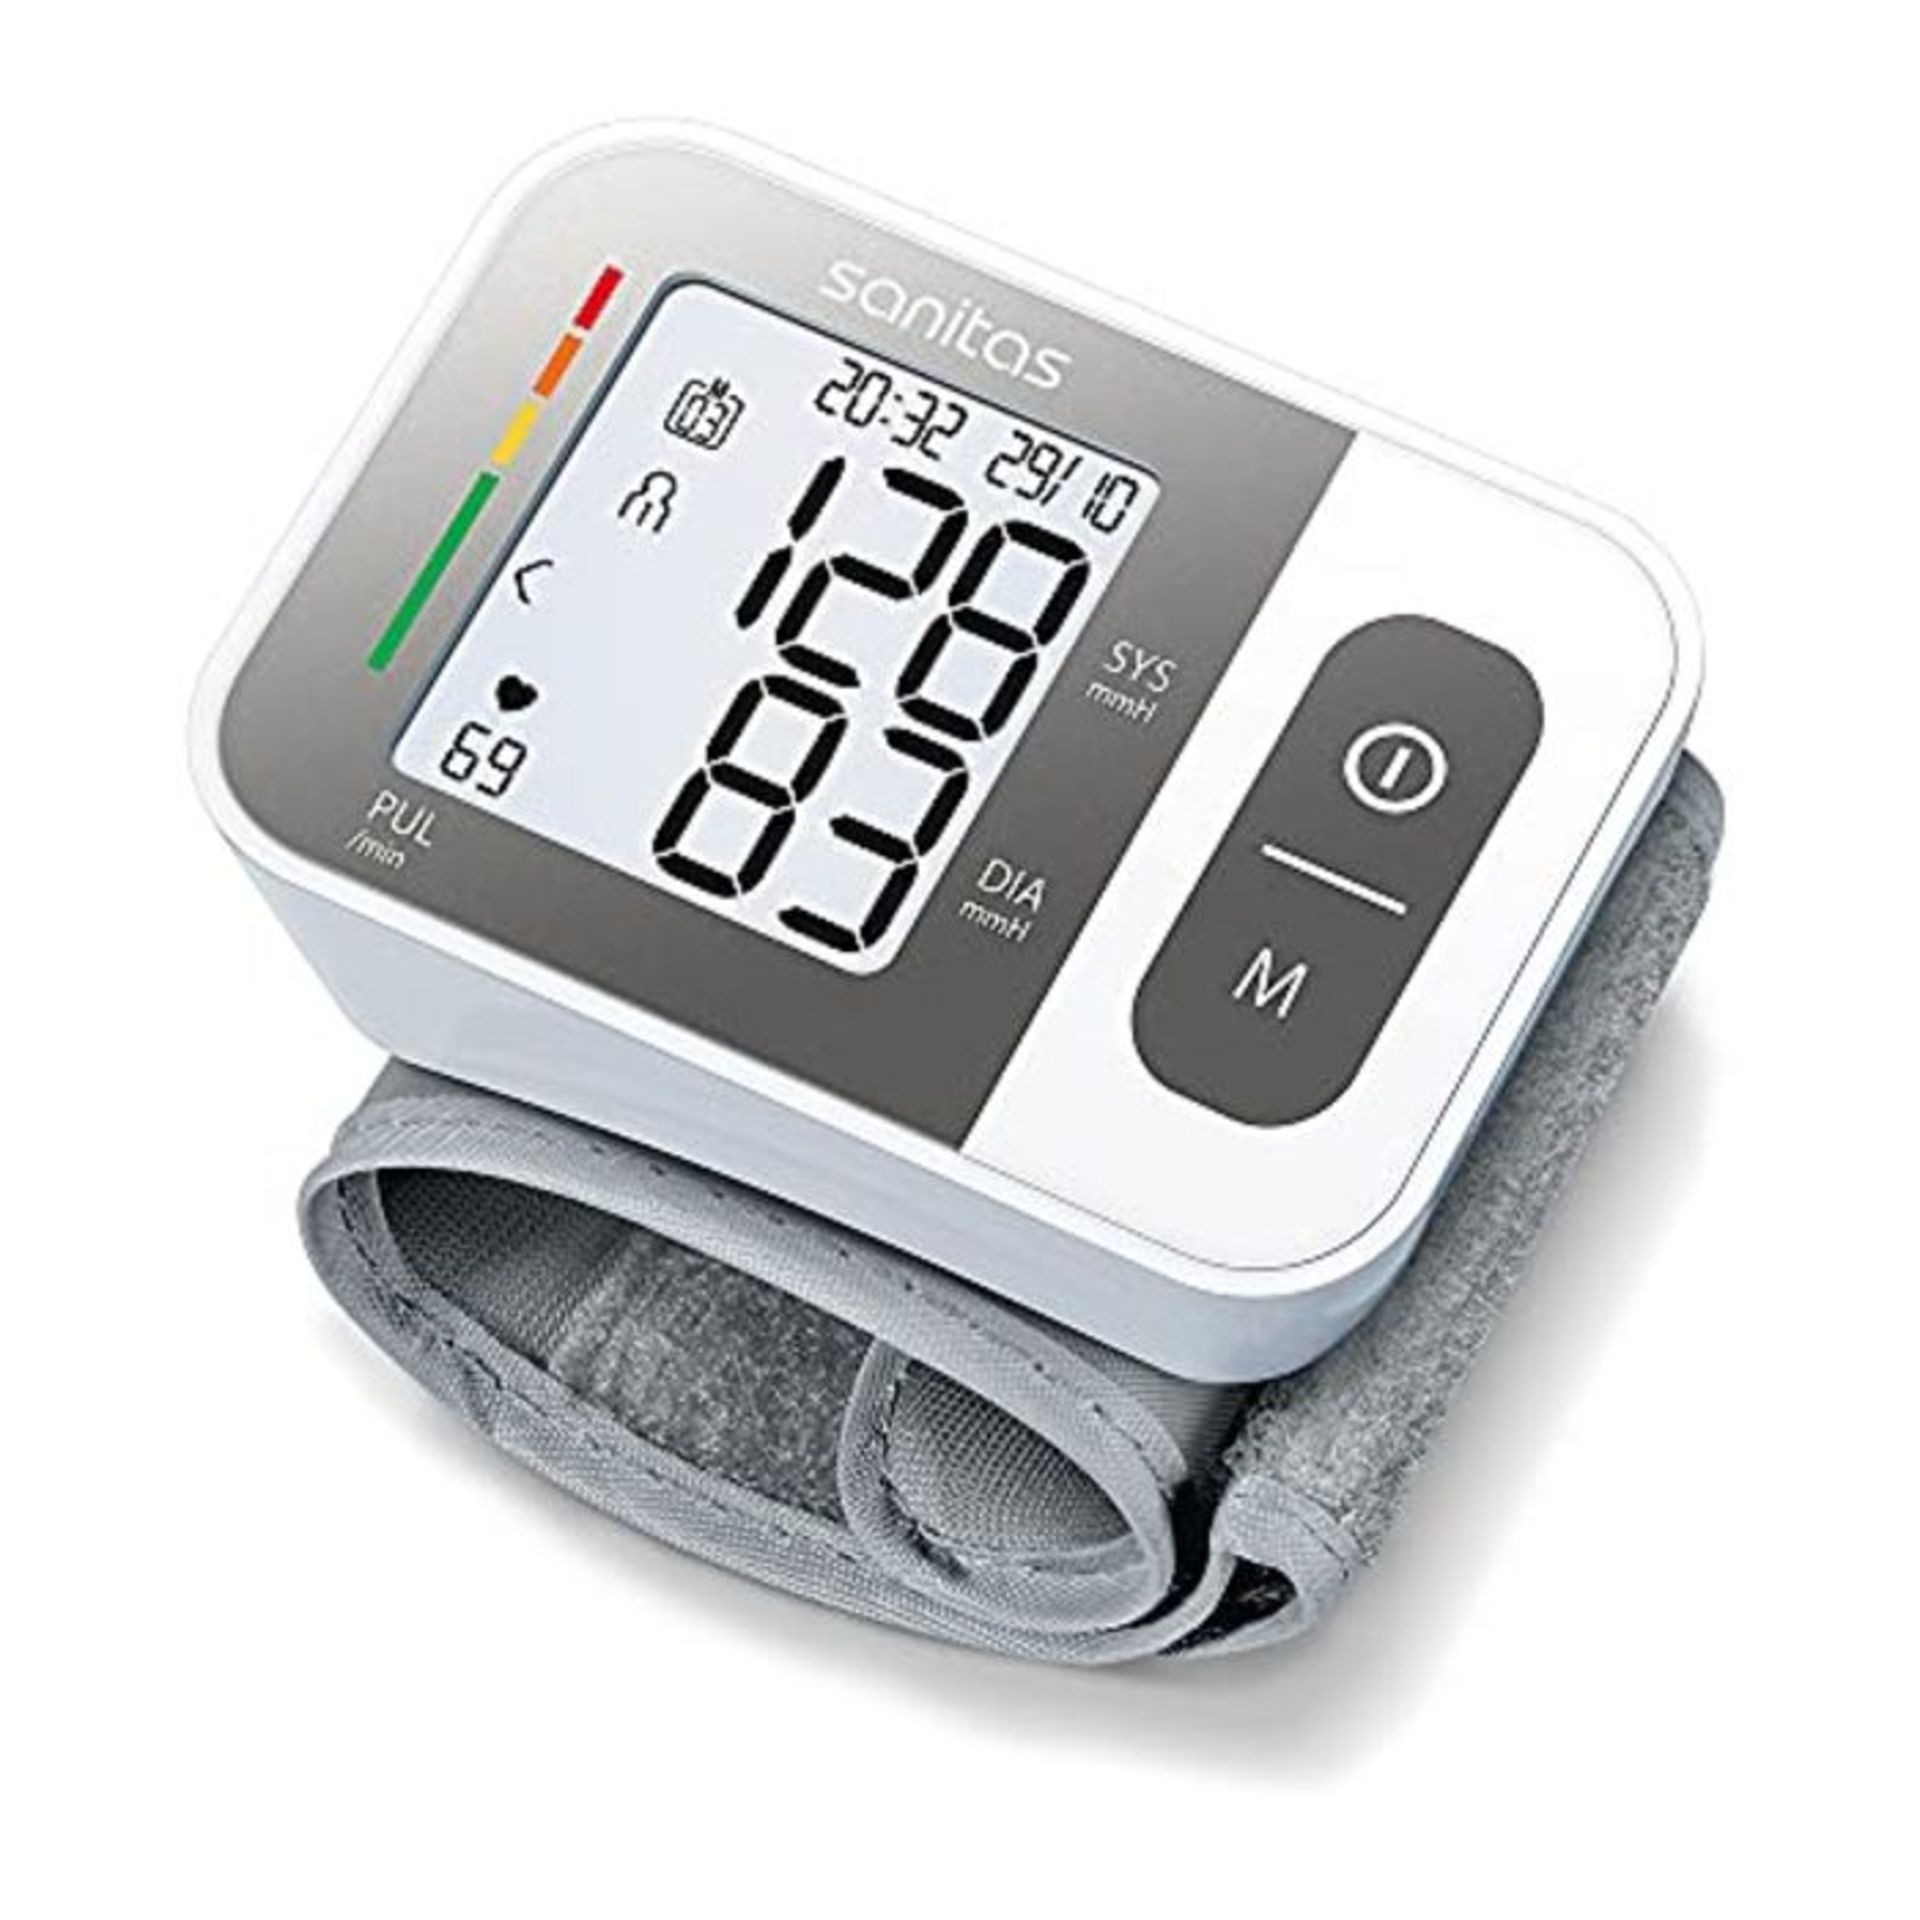 Sanitas SBC 15 Handgelenk-BlutdruckmessgerÃ¤t, vollautomatische Blutdruck- und Pulsm